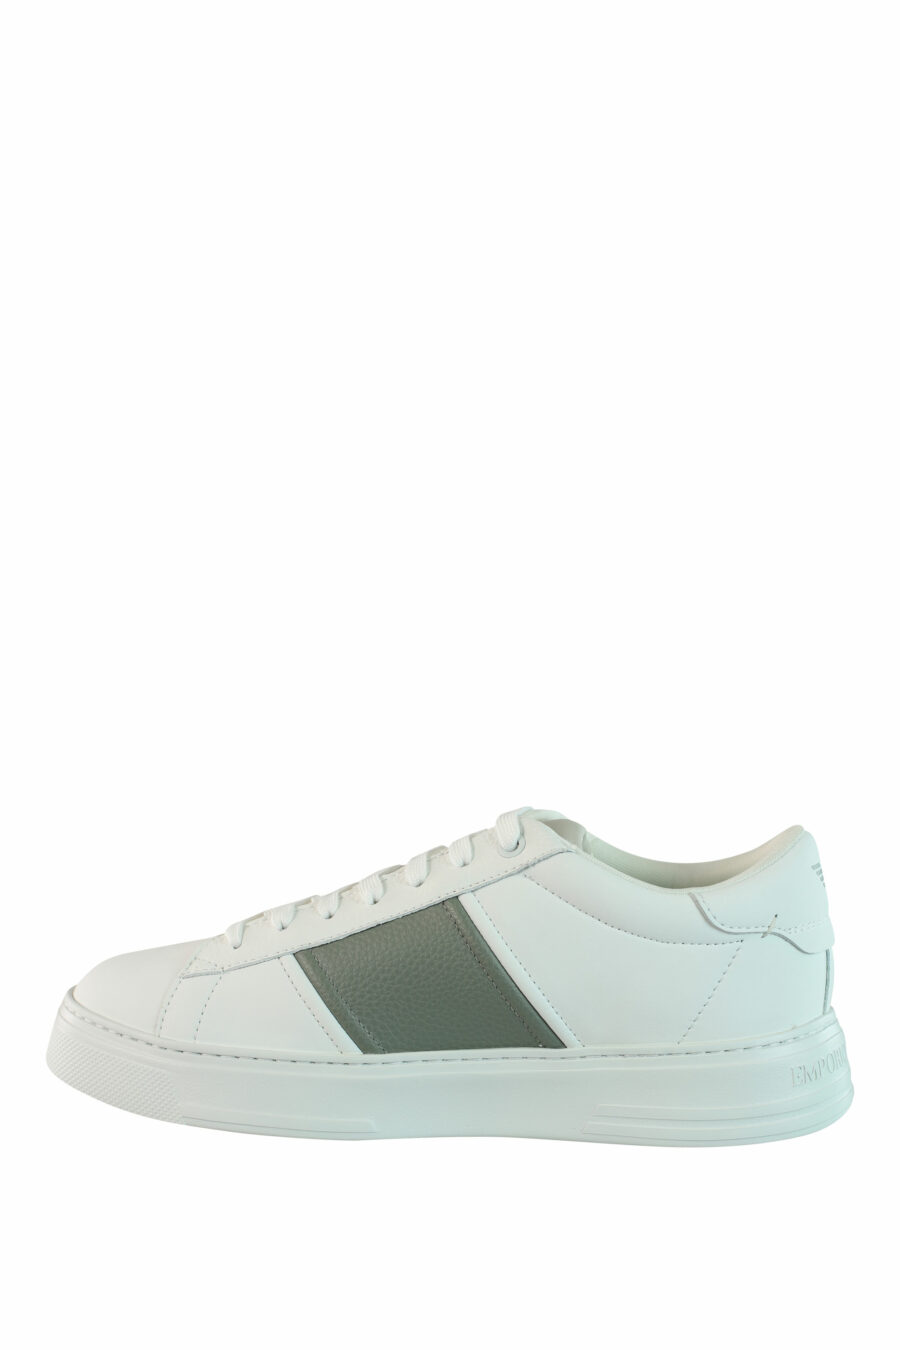 Zapatillas blancas con gris y minilogo - IMG 0894